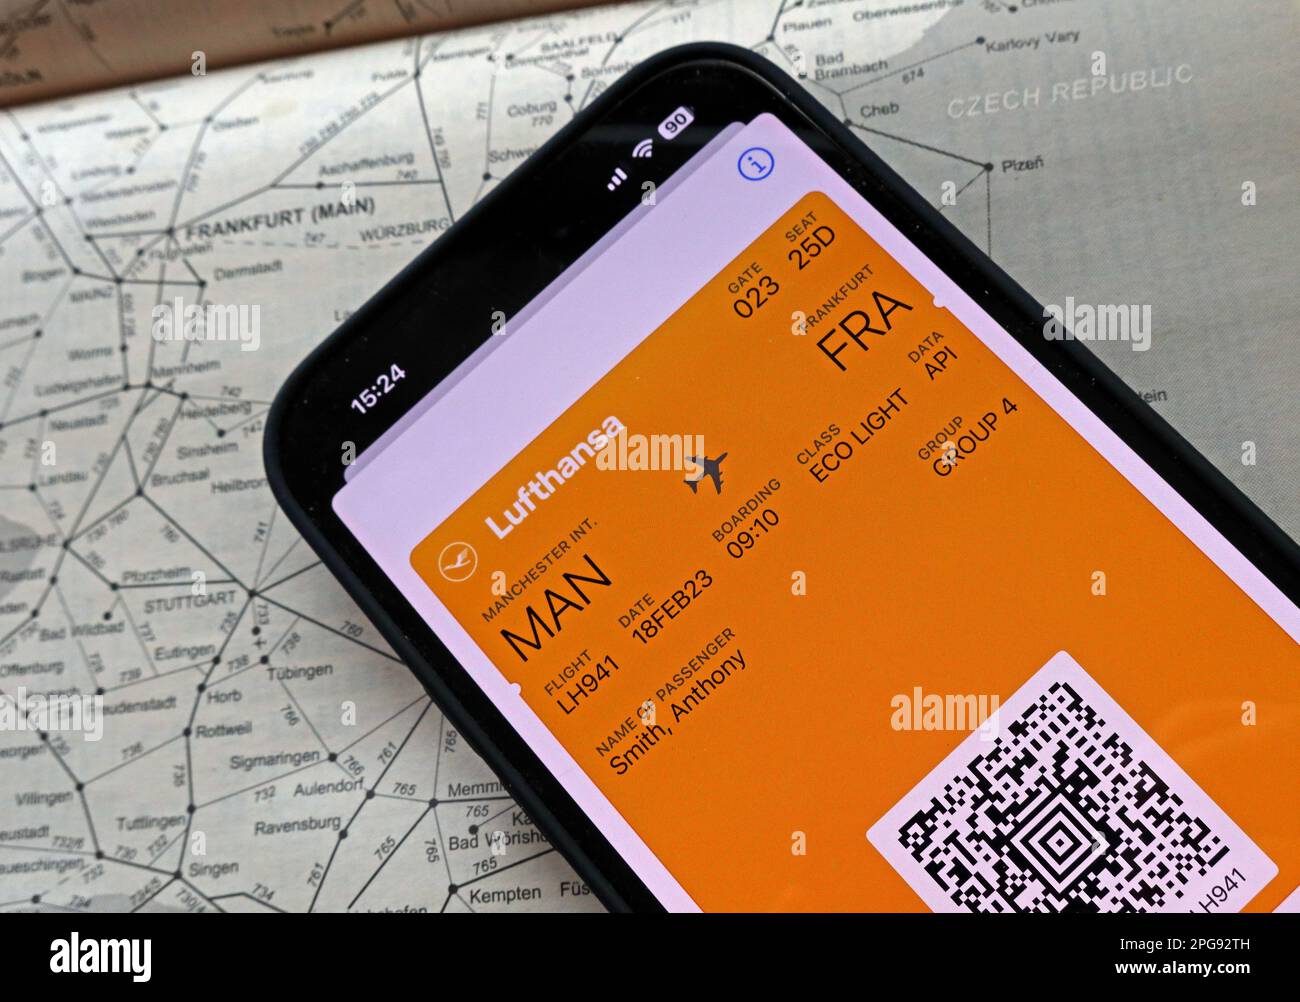 Carta d'imbarco digitale PER voli aerei MAN-fra su cellulare, con Lufthansa, e mappa dei trasporti ferroviari di Francoforte, Germania Foto Stock